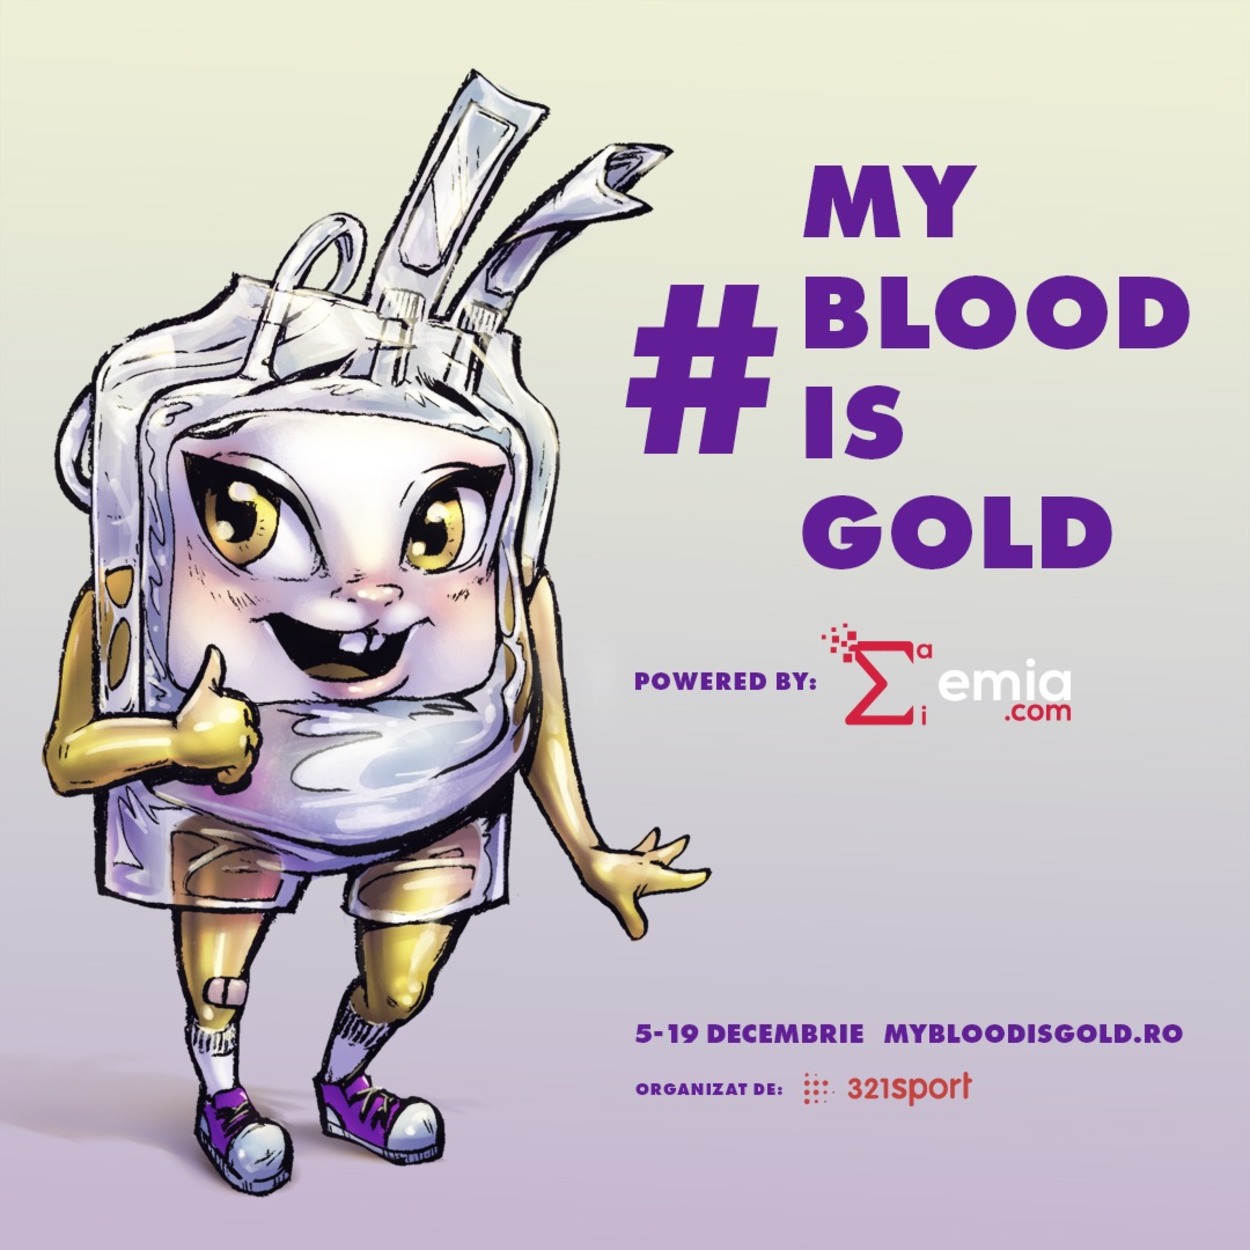 E nevoie stringentă de sânge. ”În pas de alergare la donare”, o campanie menită să salveze vieți